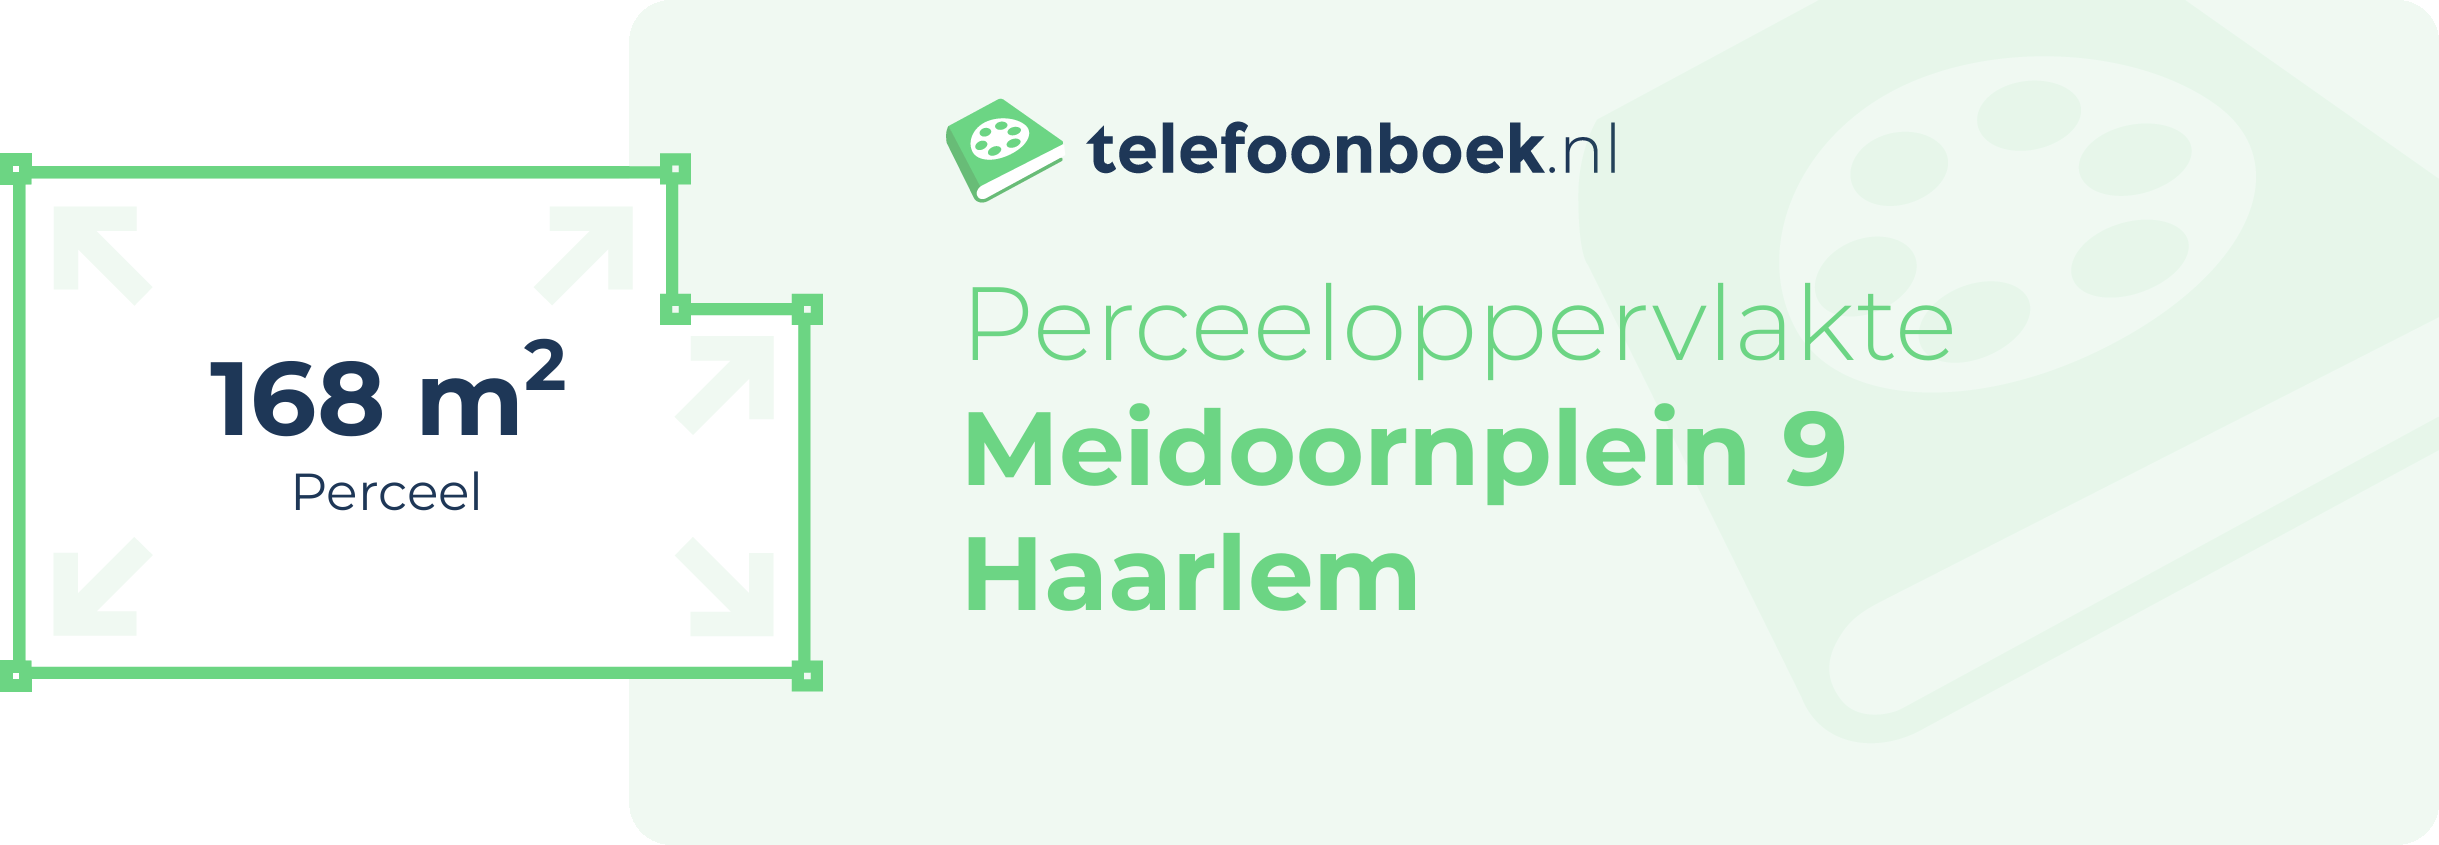 Perceeloppervlakte Meidoornplein 9 Haarlem